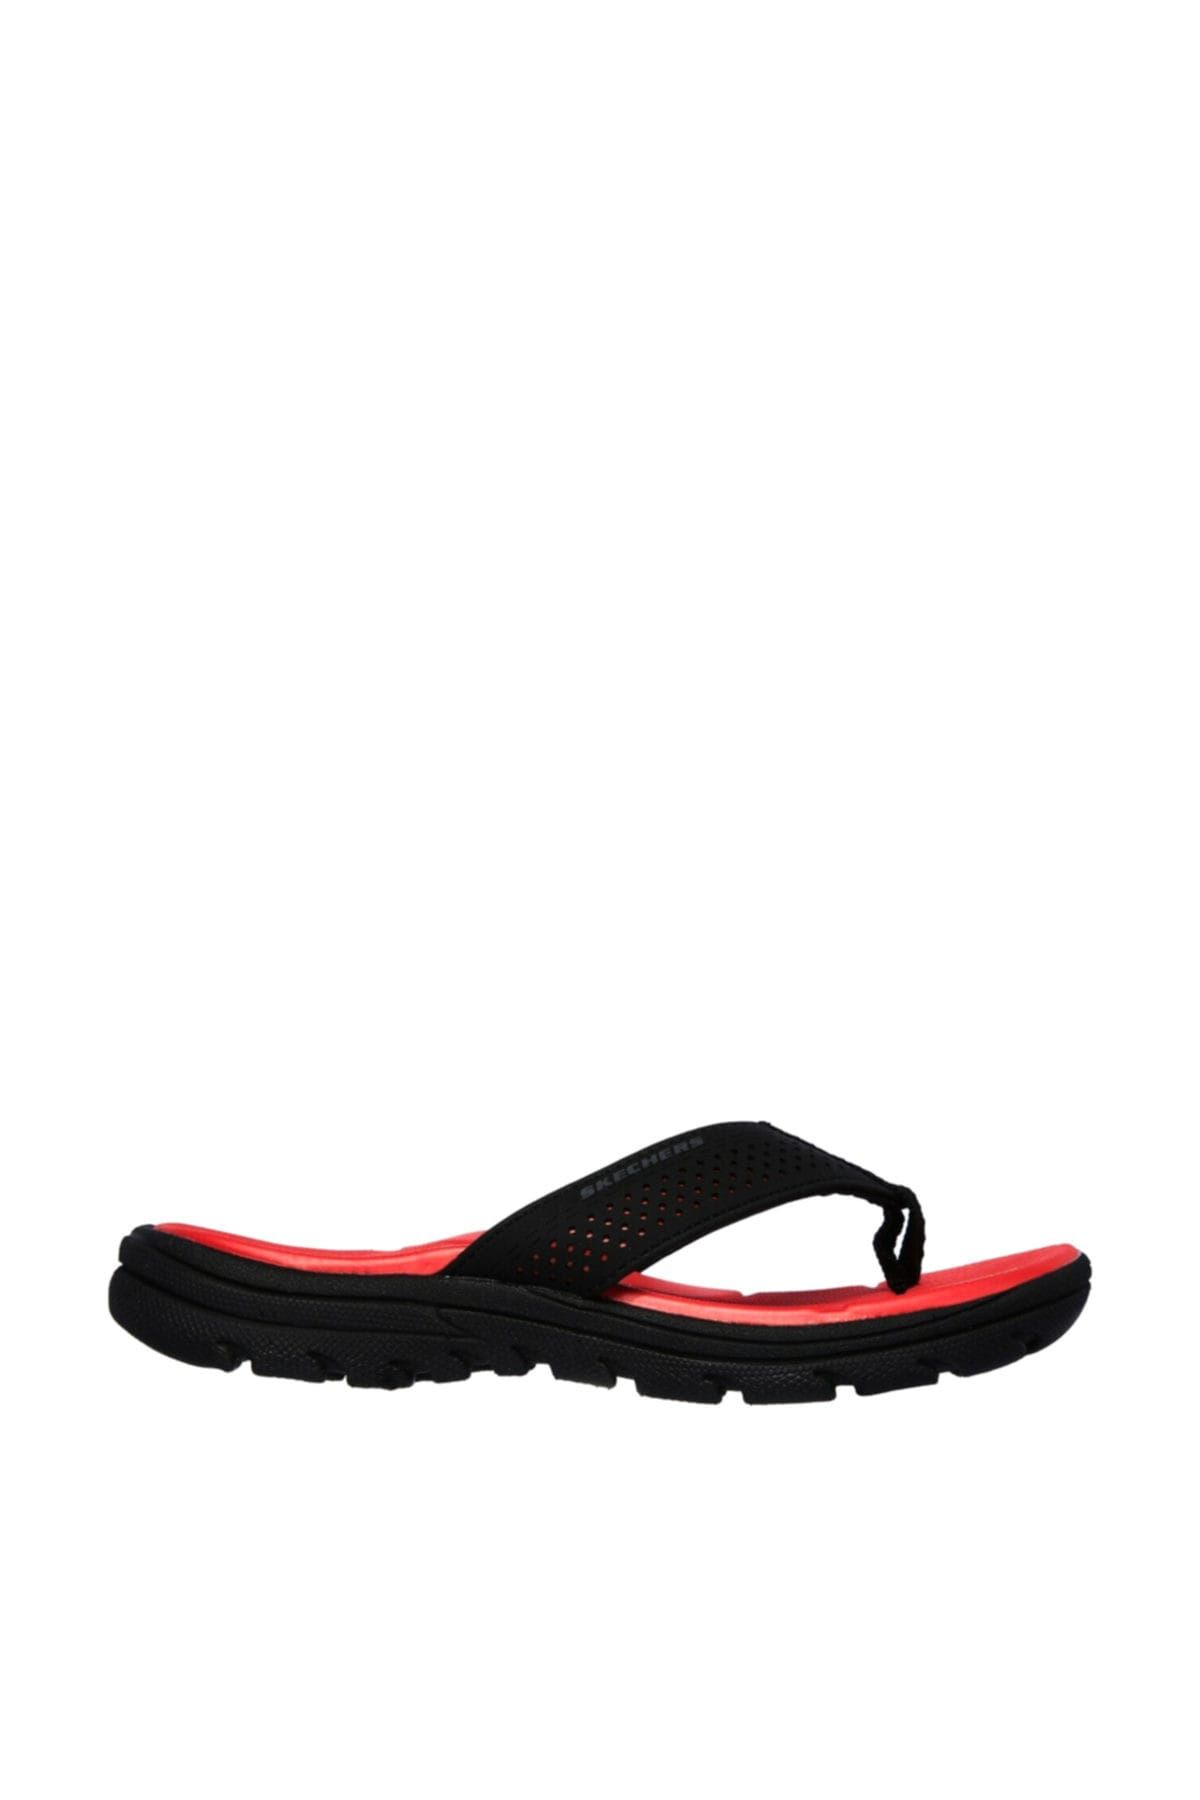 Boys Skechers (92224L) Supreme Black/Red Flip Flops 88O